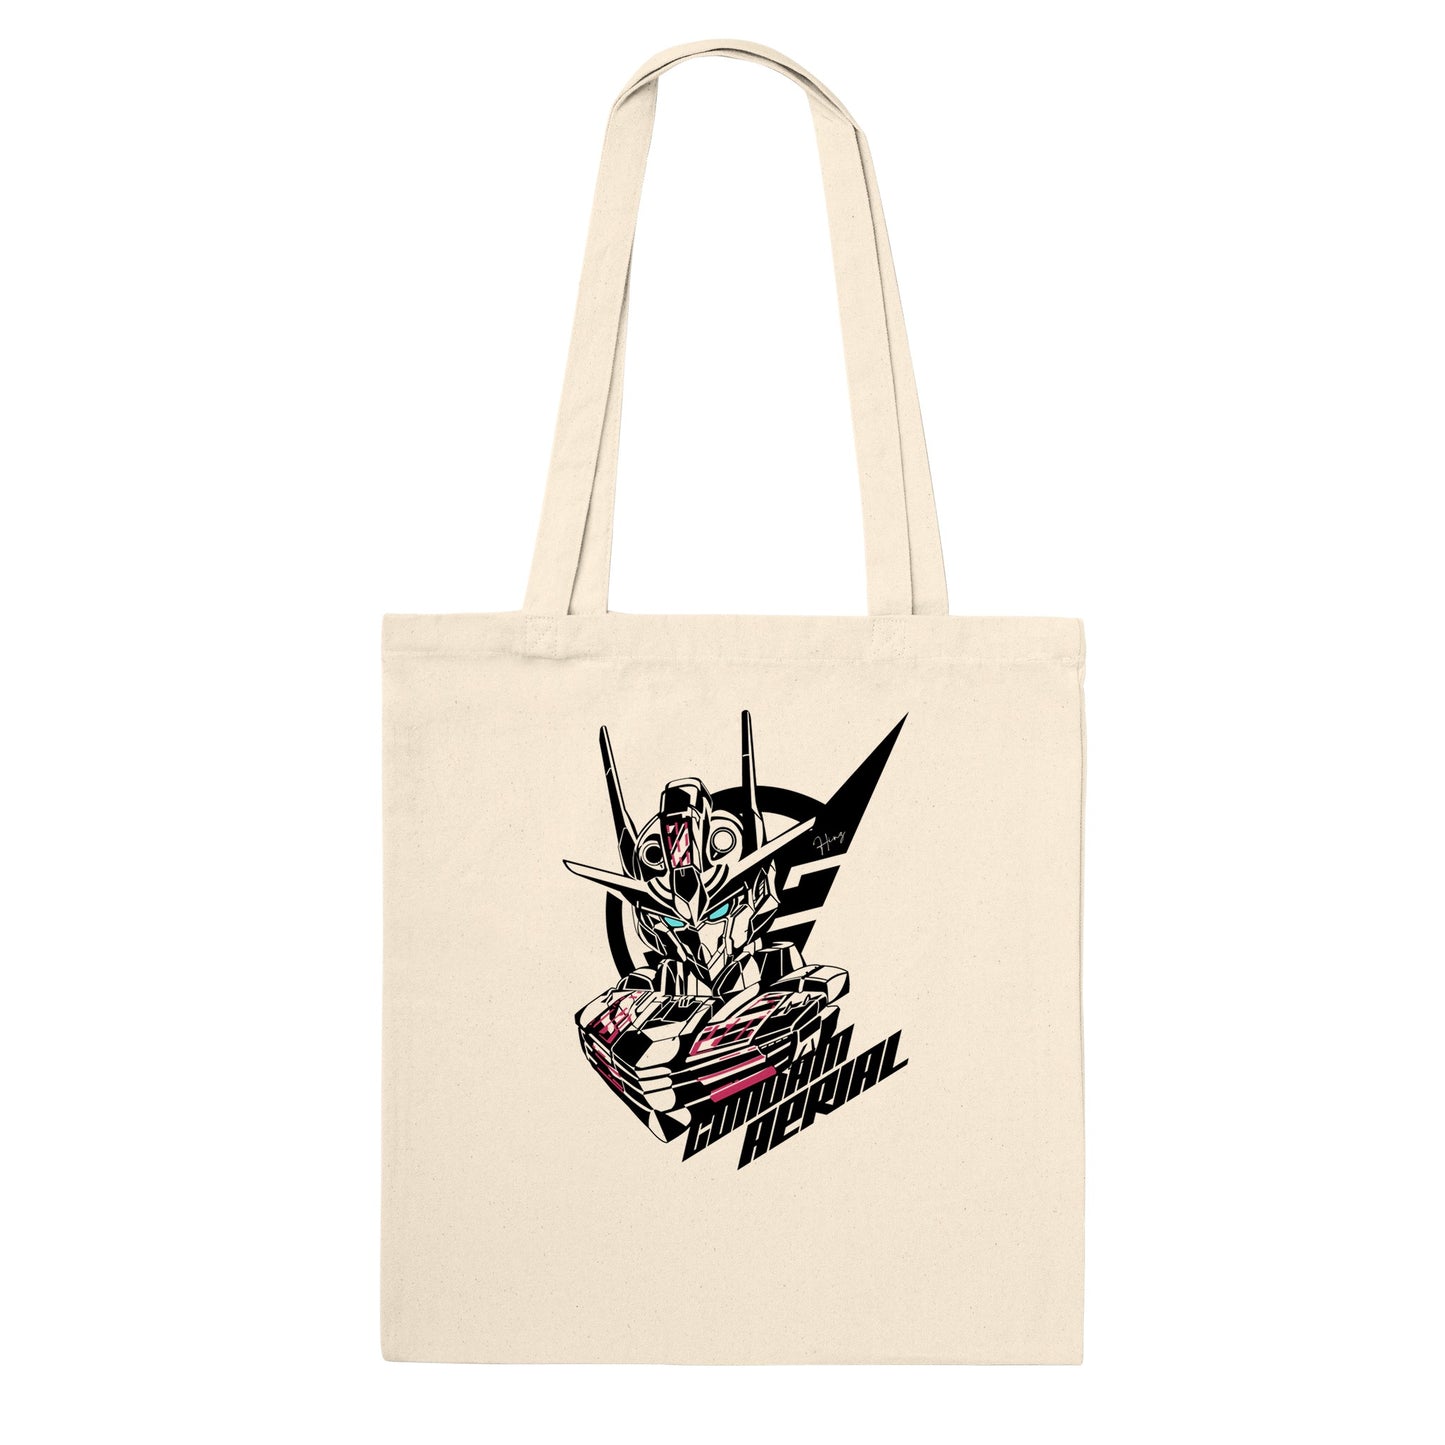 Gundam Tote Bag - Gundam Aerial Artwork - Premium Tote Bag